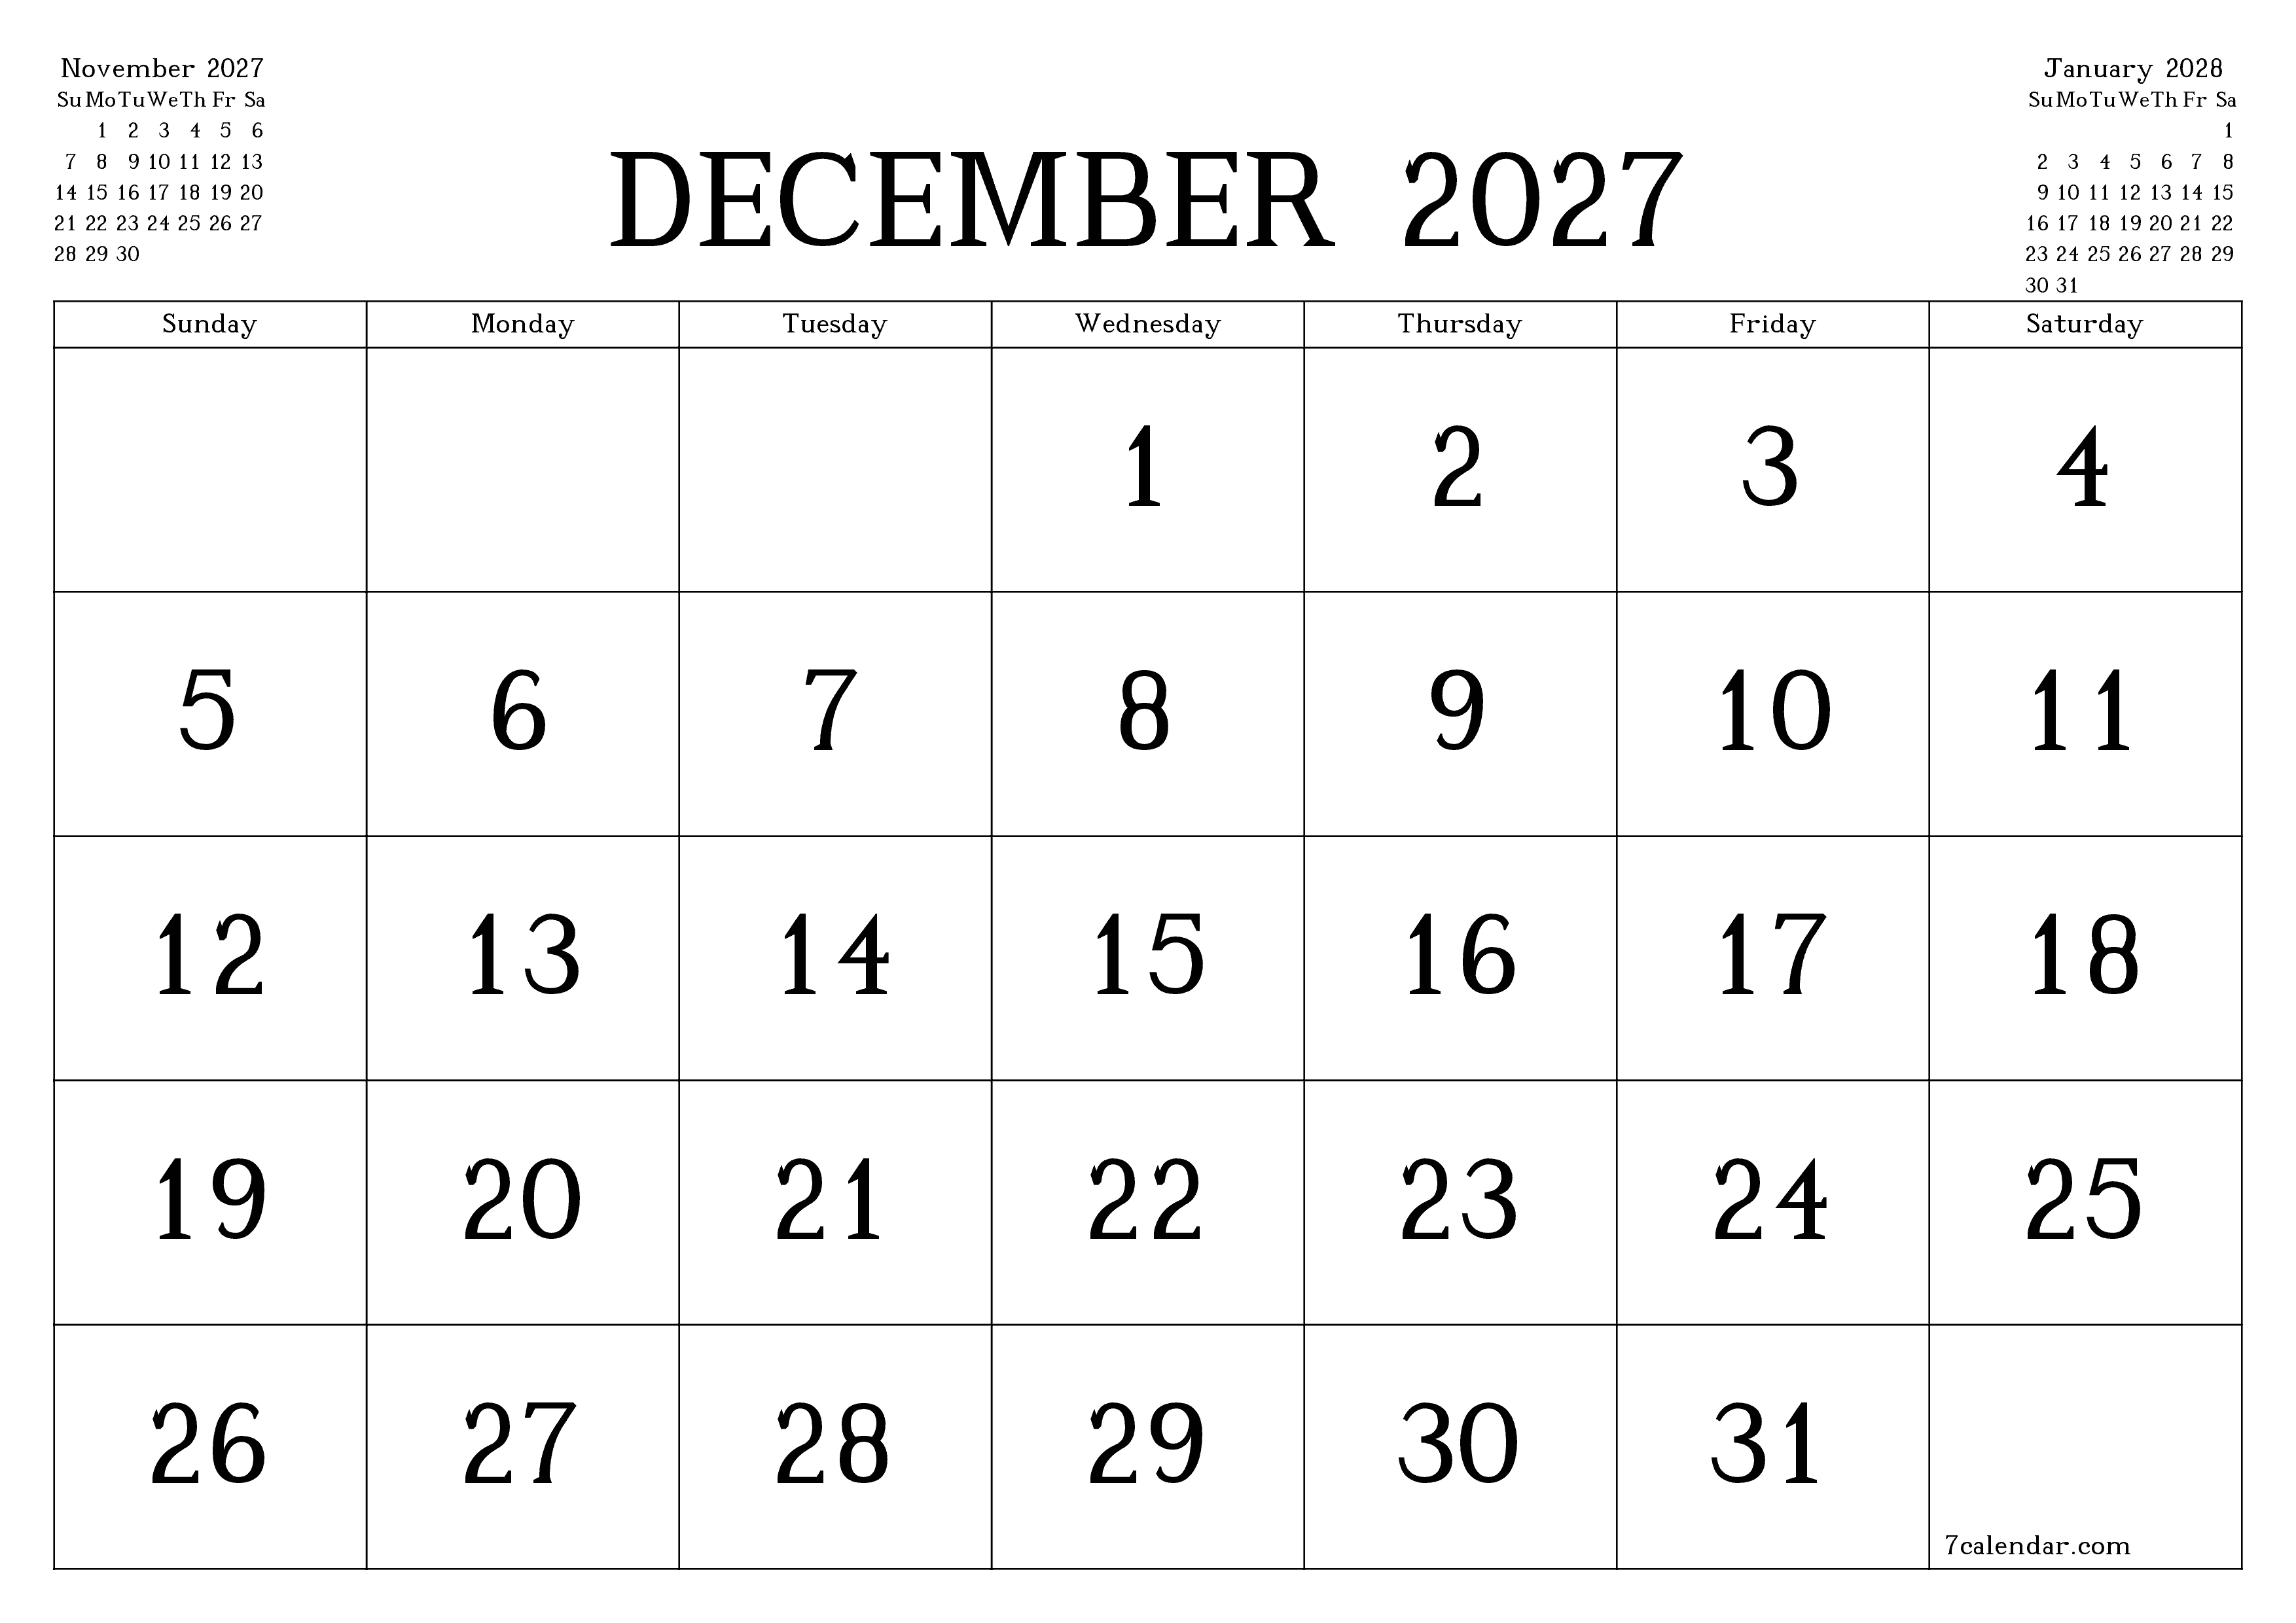 Blank calendar December 2027